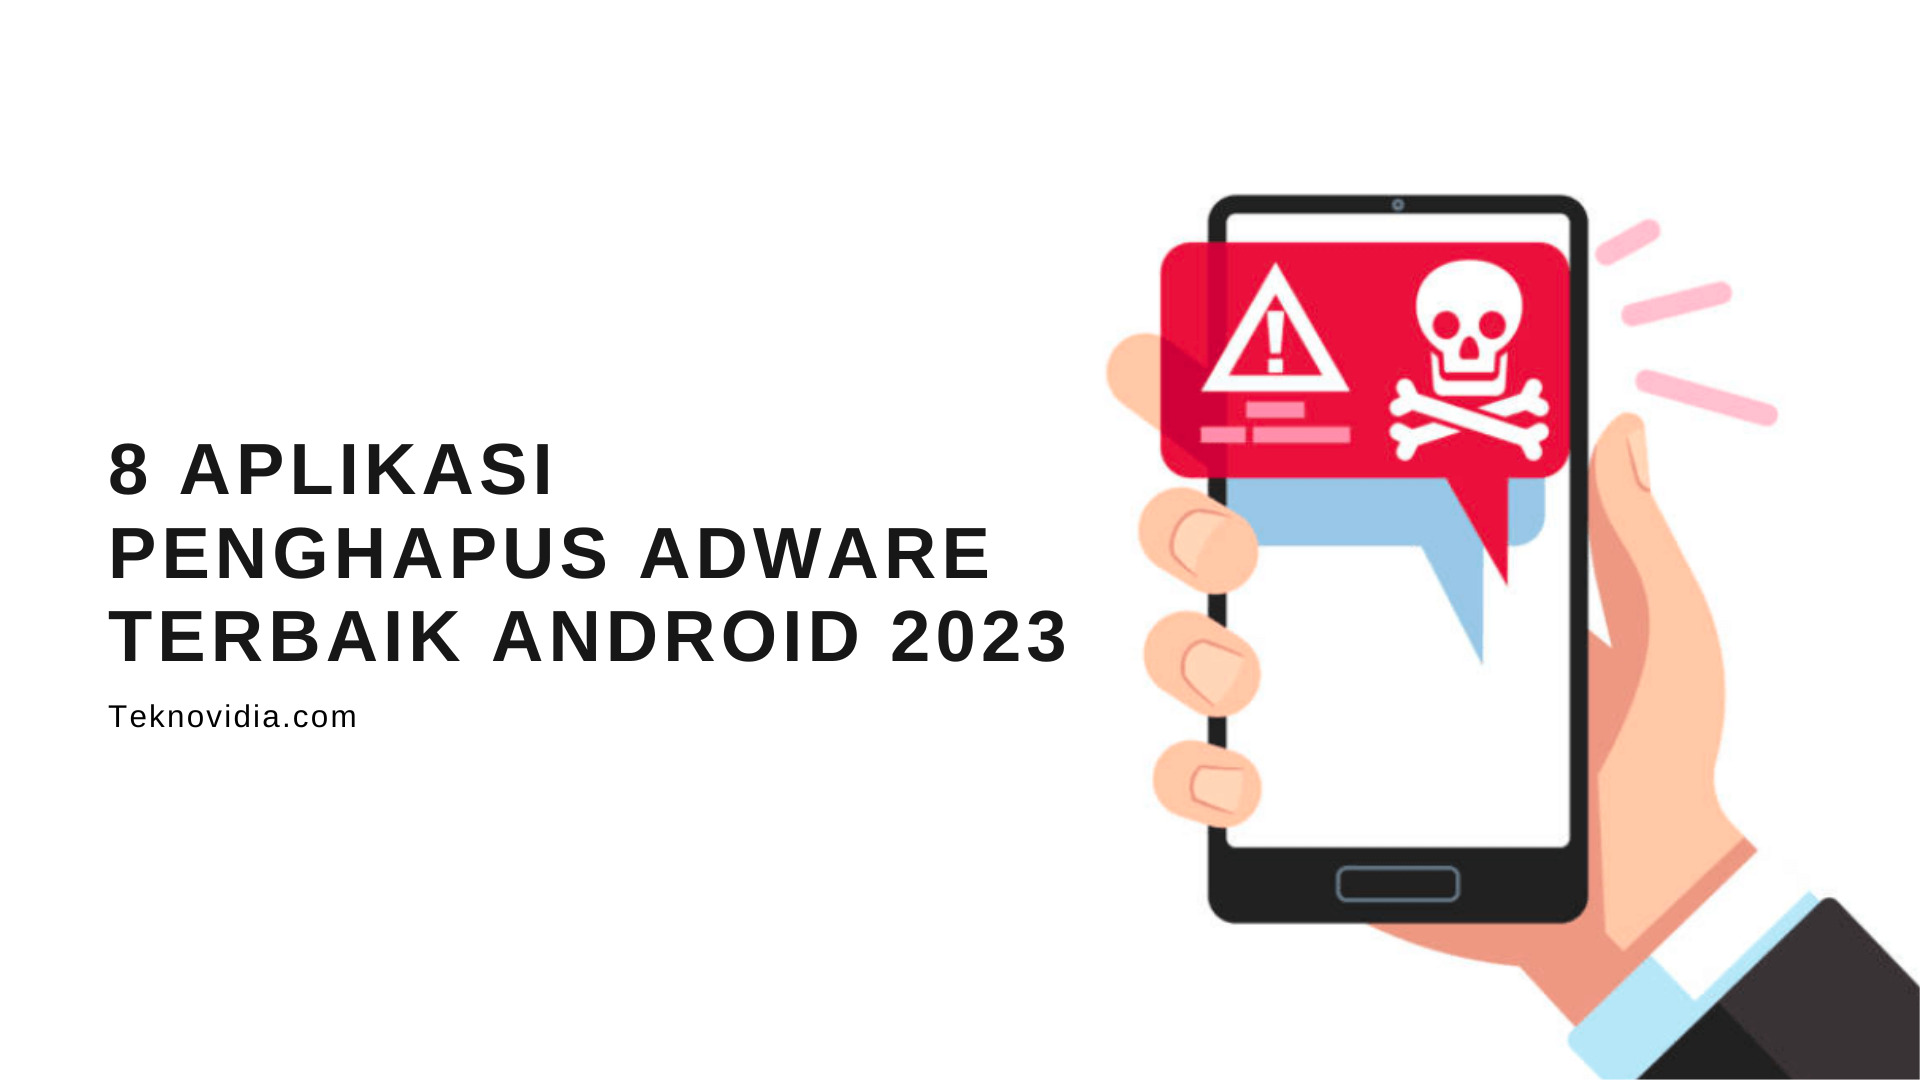 8 Aplikasi Penghapus Adware Terbaik Android 2023